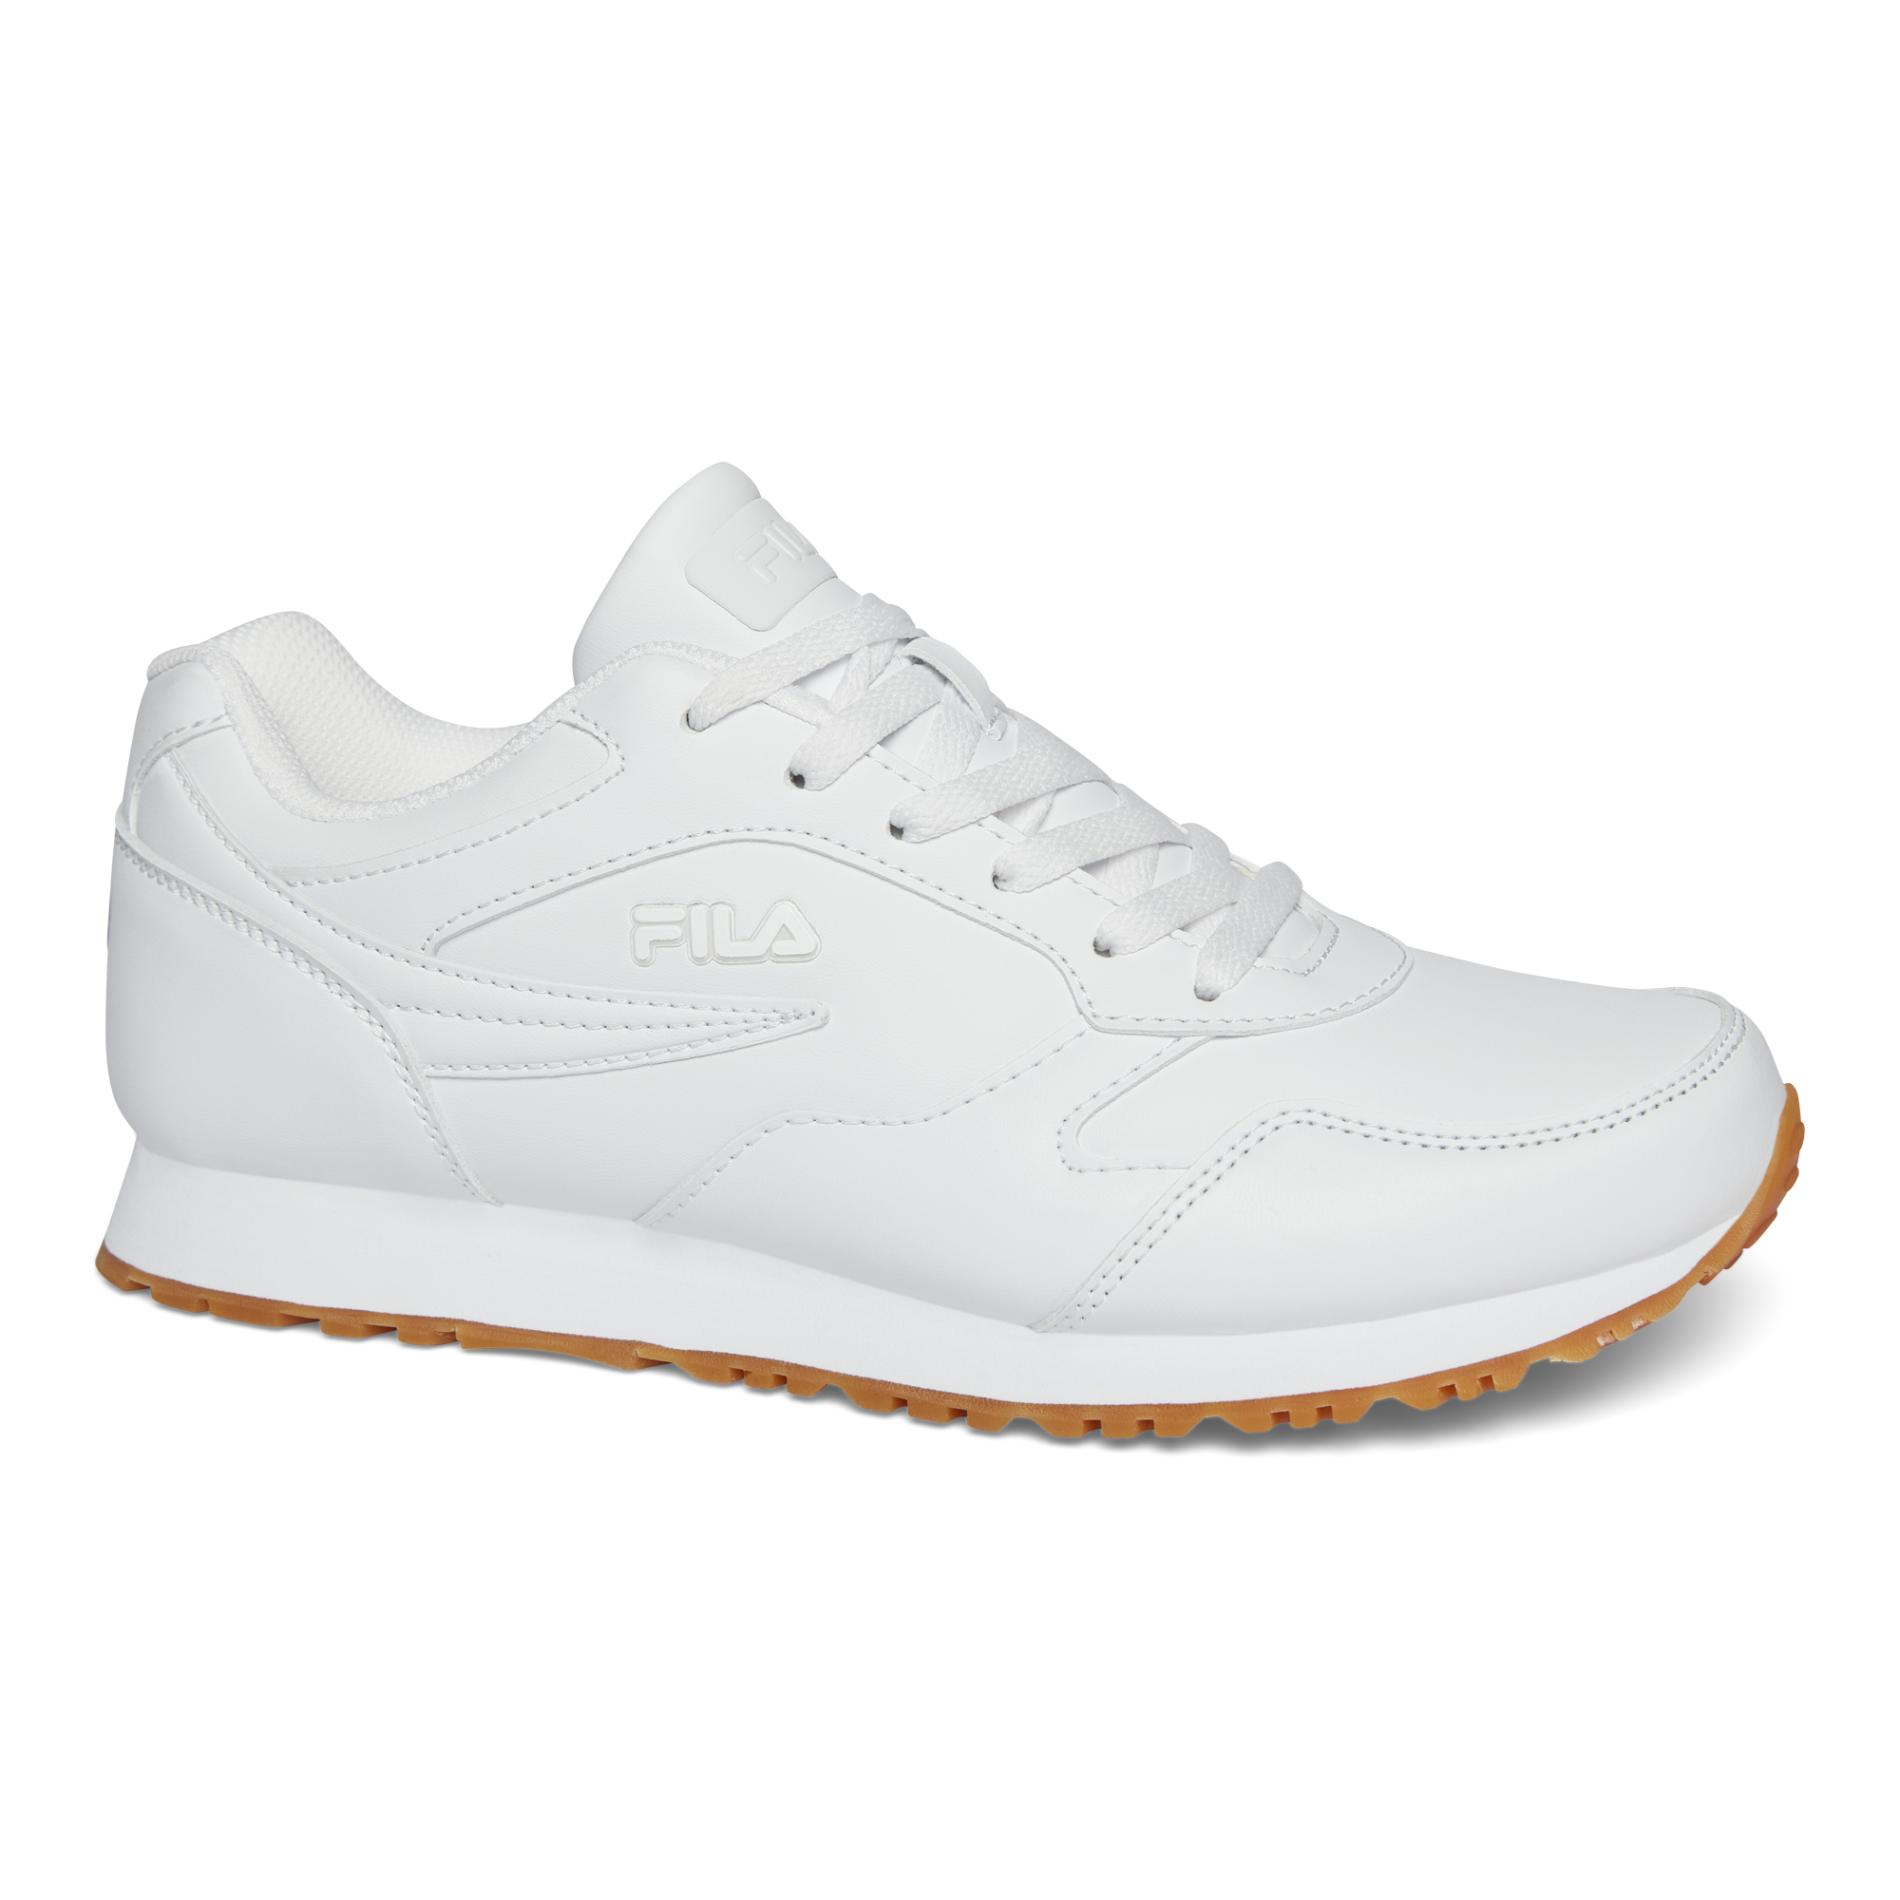 Fila Men's Classico 18 Sneaker - White